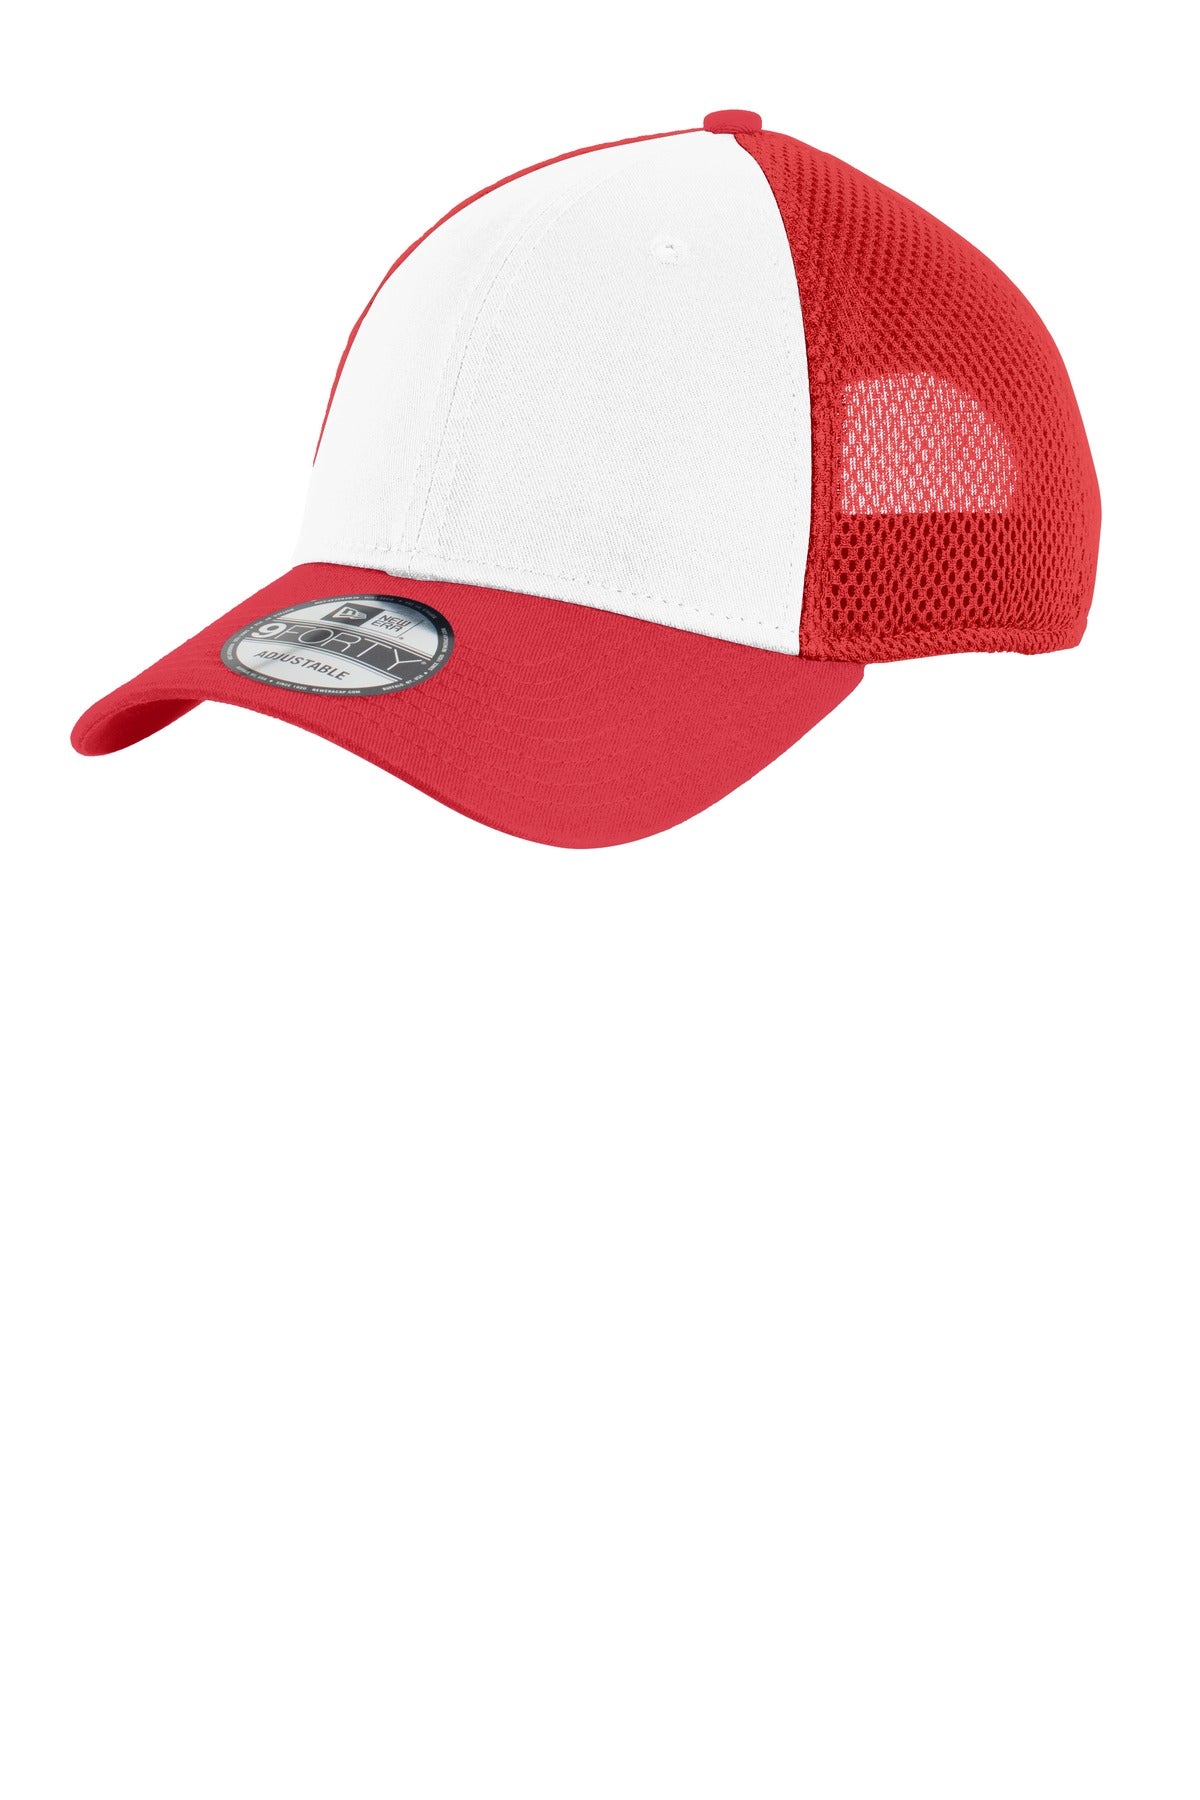 Caps White/ Scarlet Red OSFA New Era